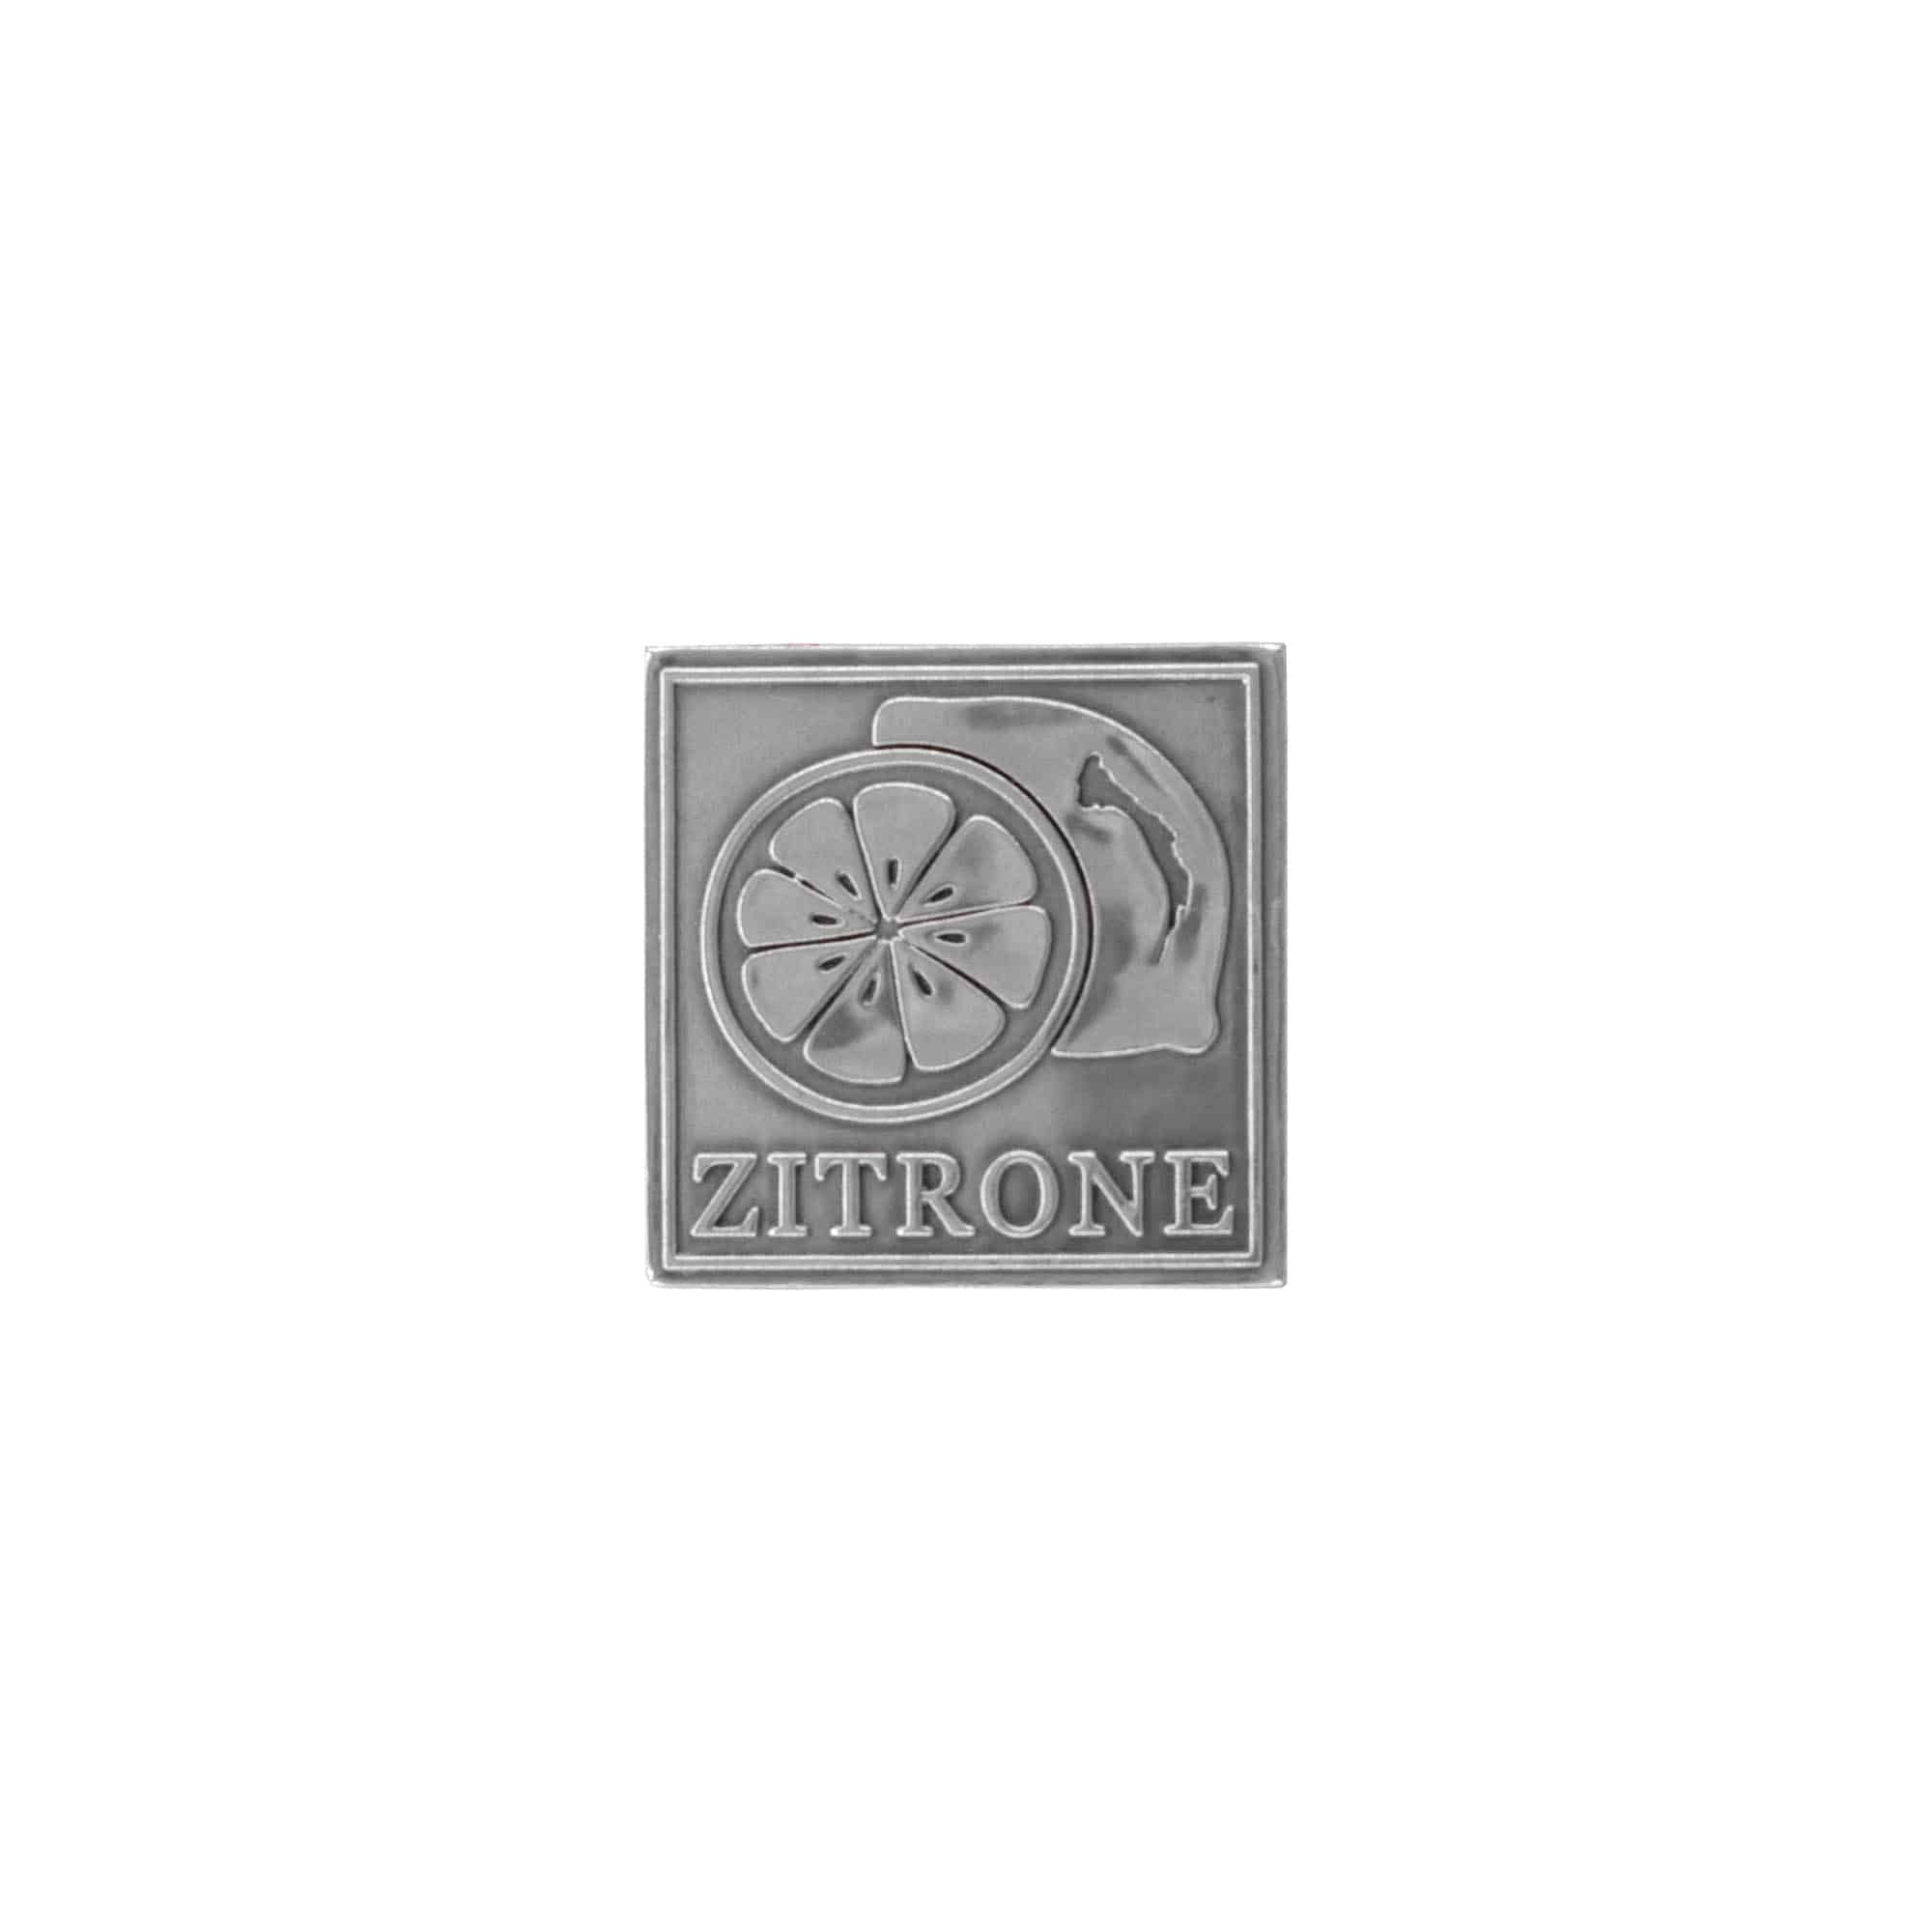 Etykieta cynowa 'Cytryna', kwadratowa, metal, kolor srebrny